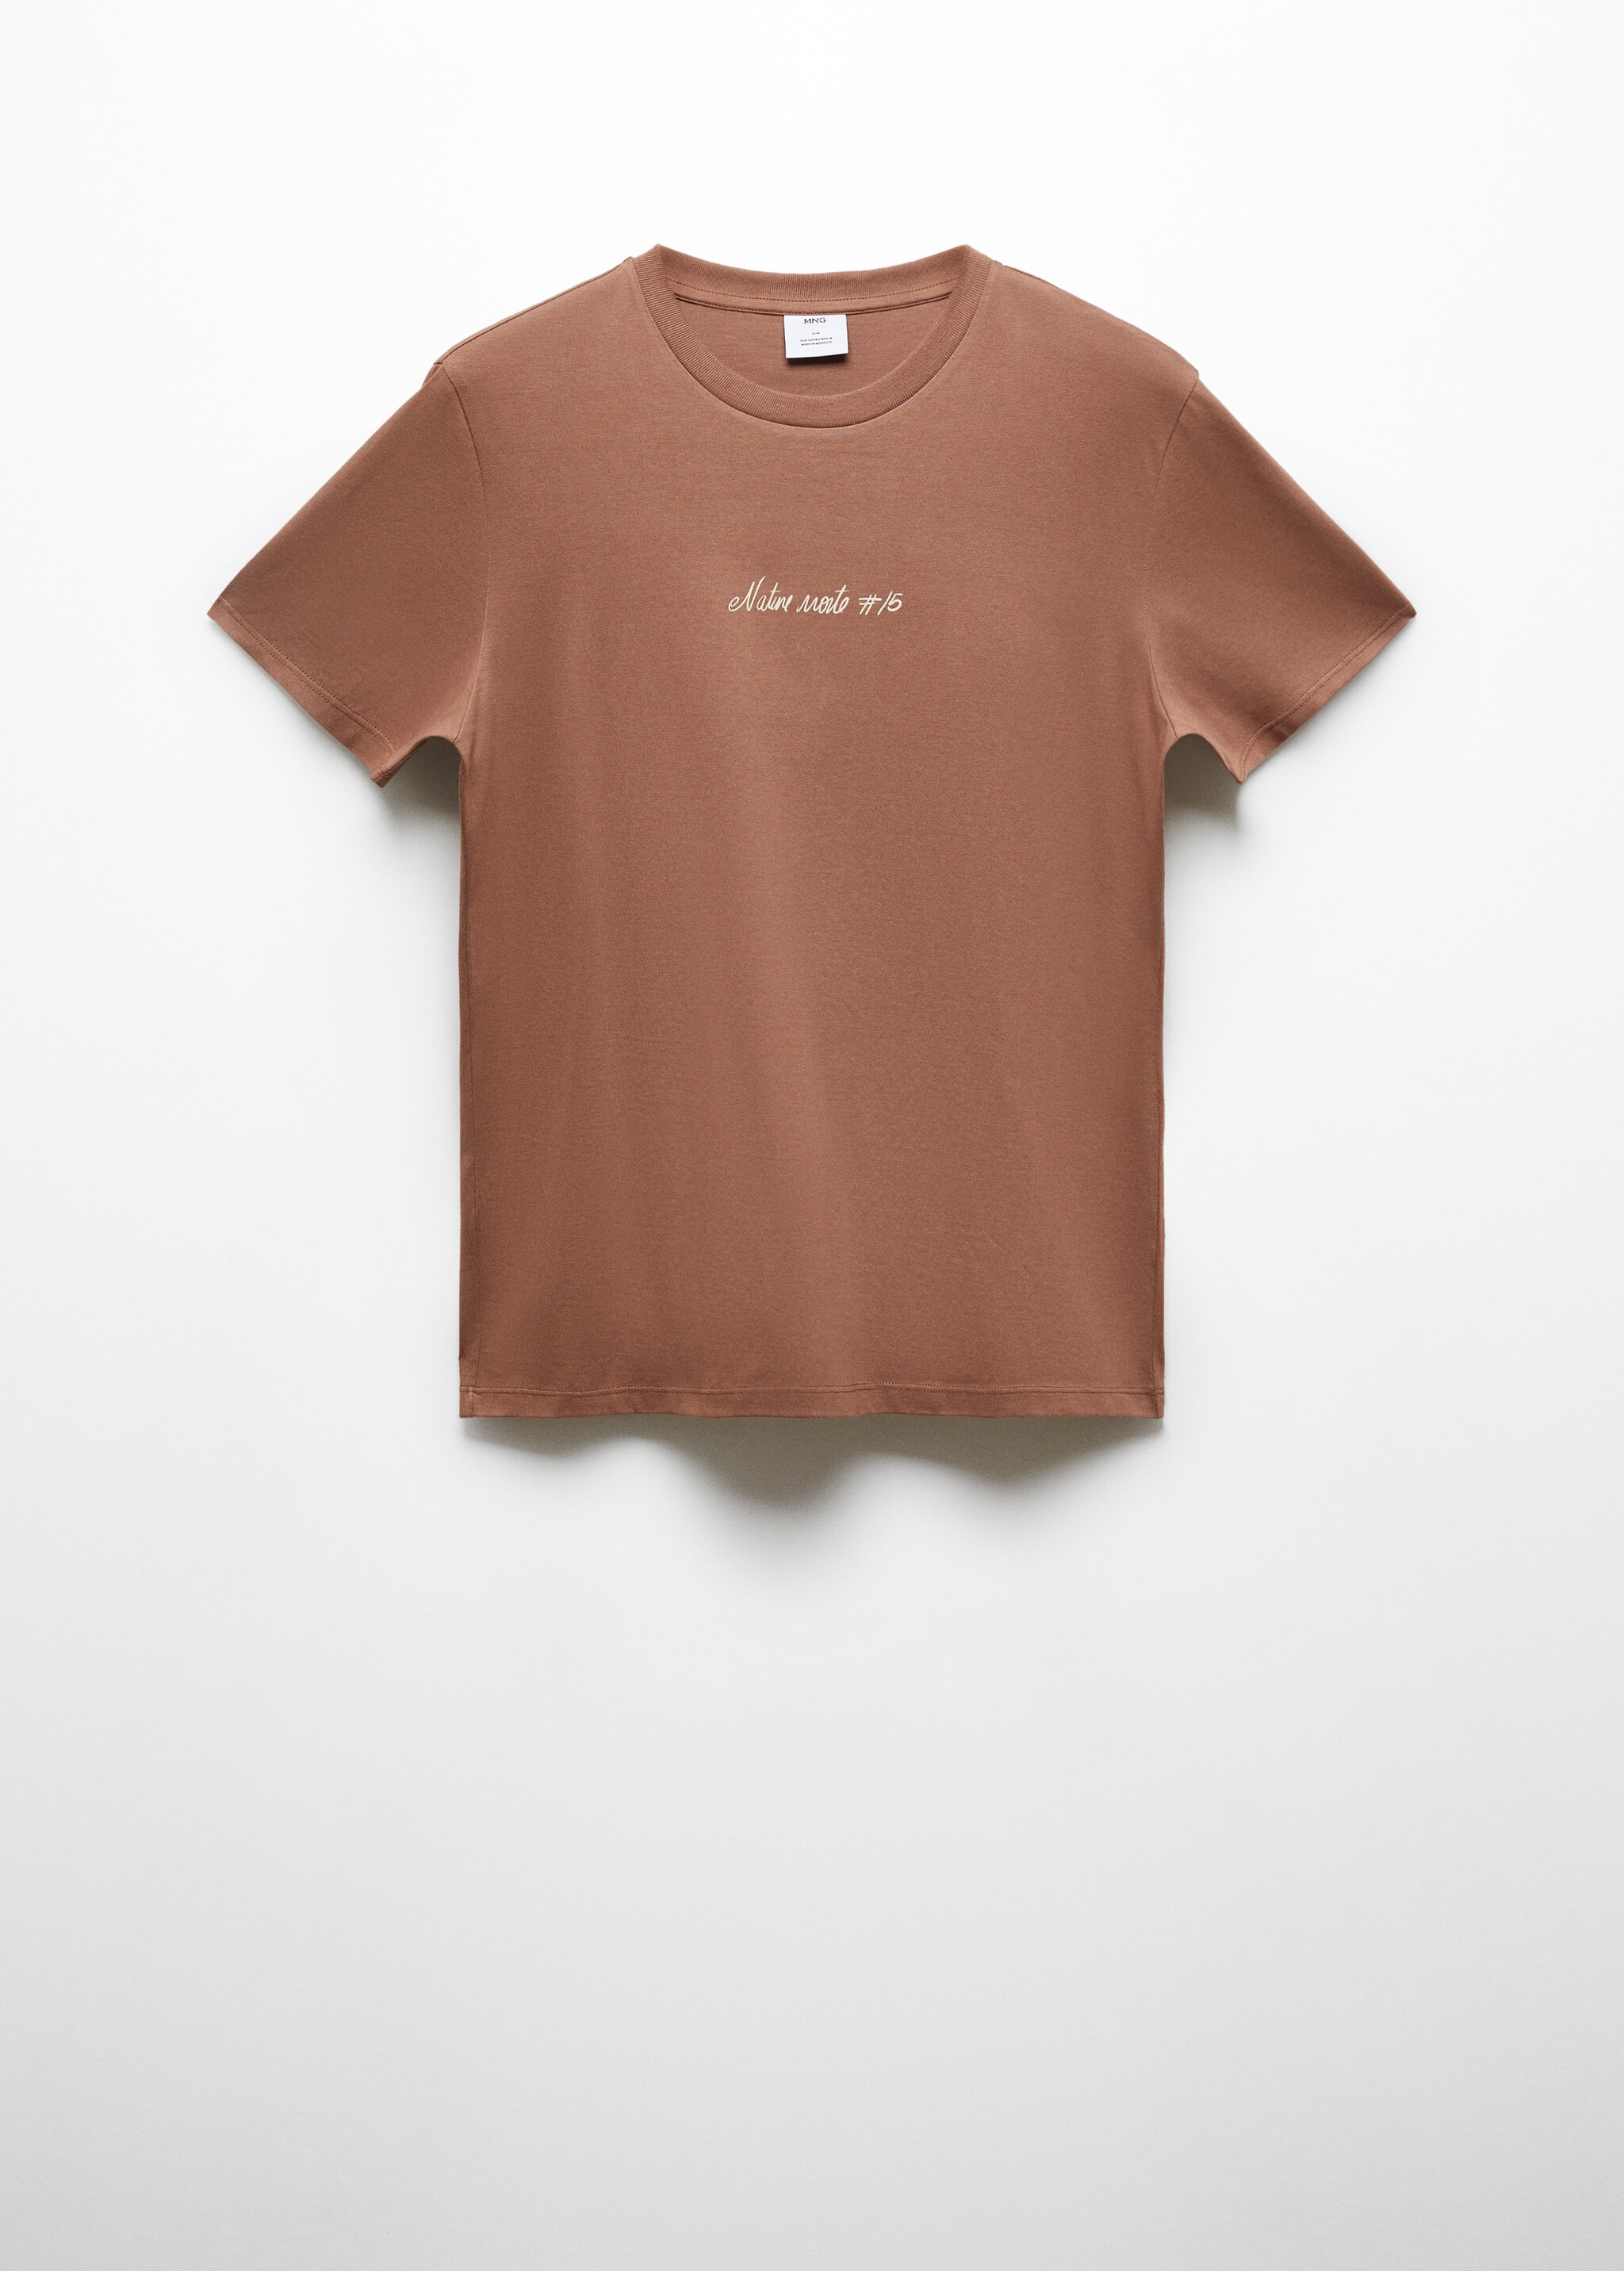 Camiseta 100% algodón detalle estampado - Artículo sin modelo